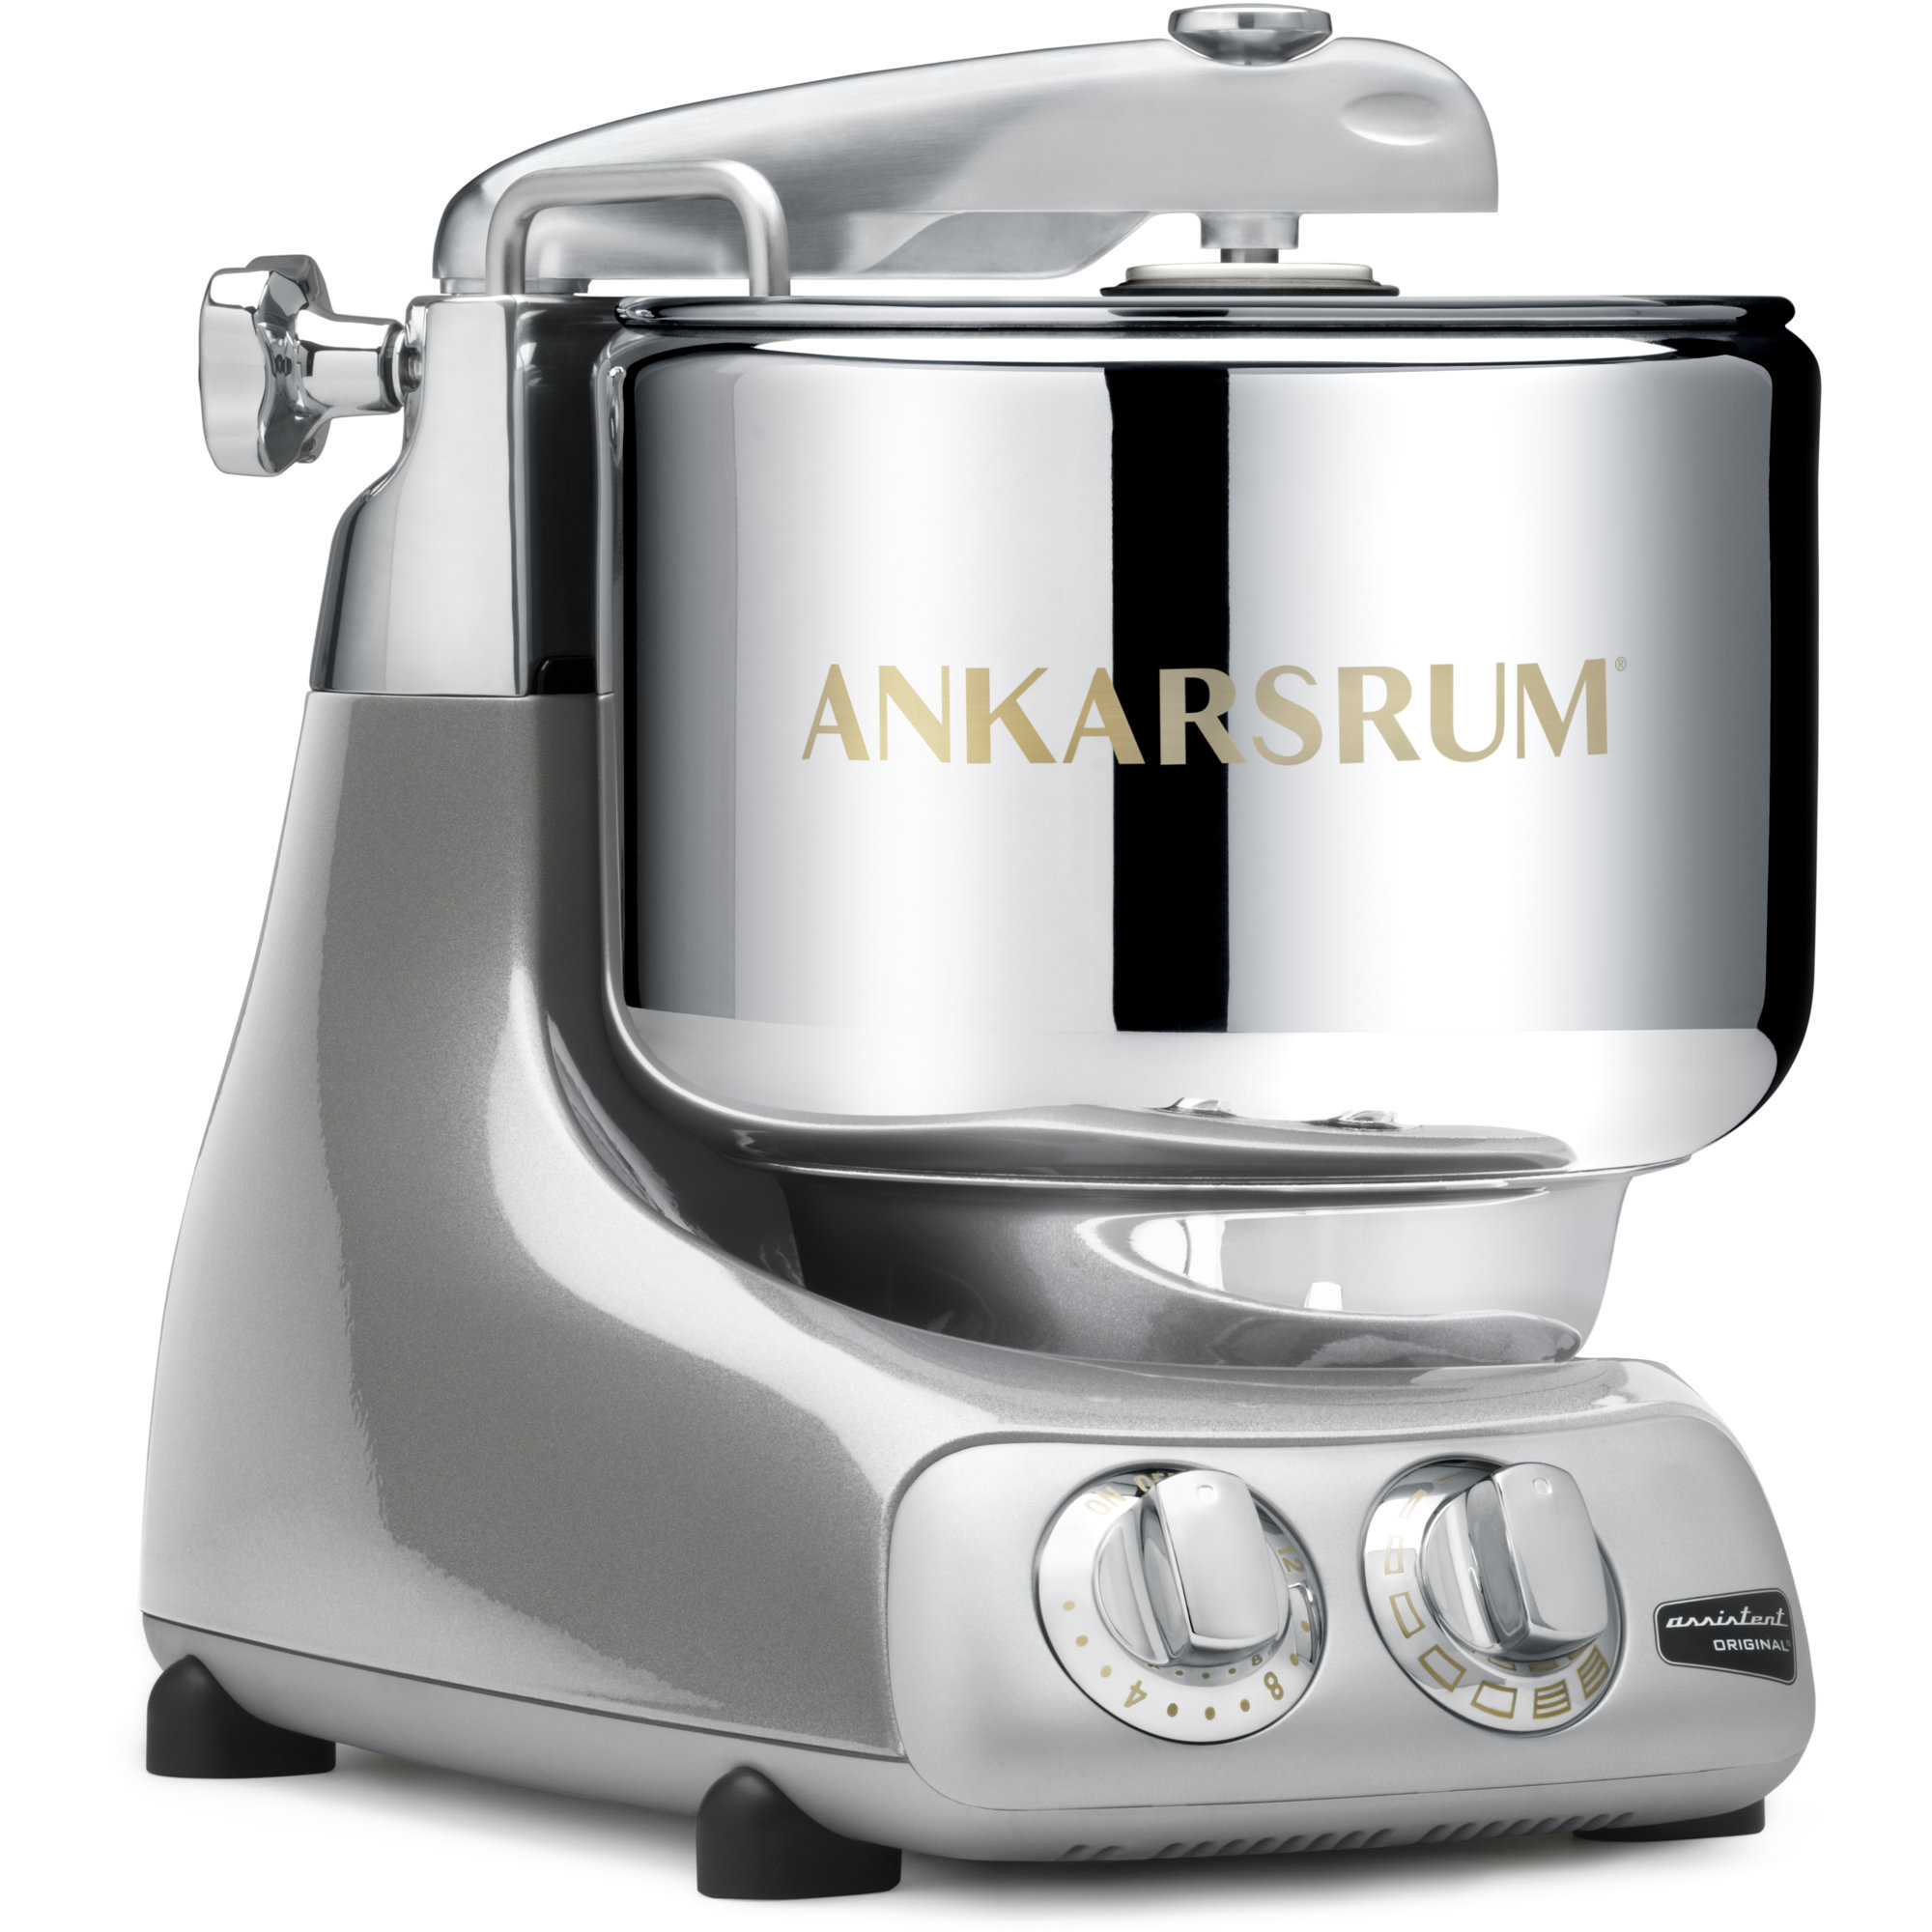 Ankarsrum AKM 6230 køkkenmaskine sølv